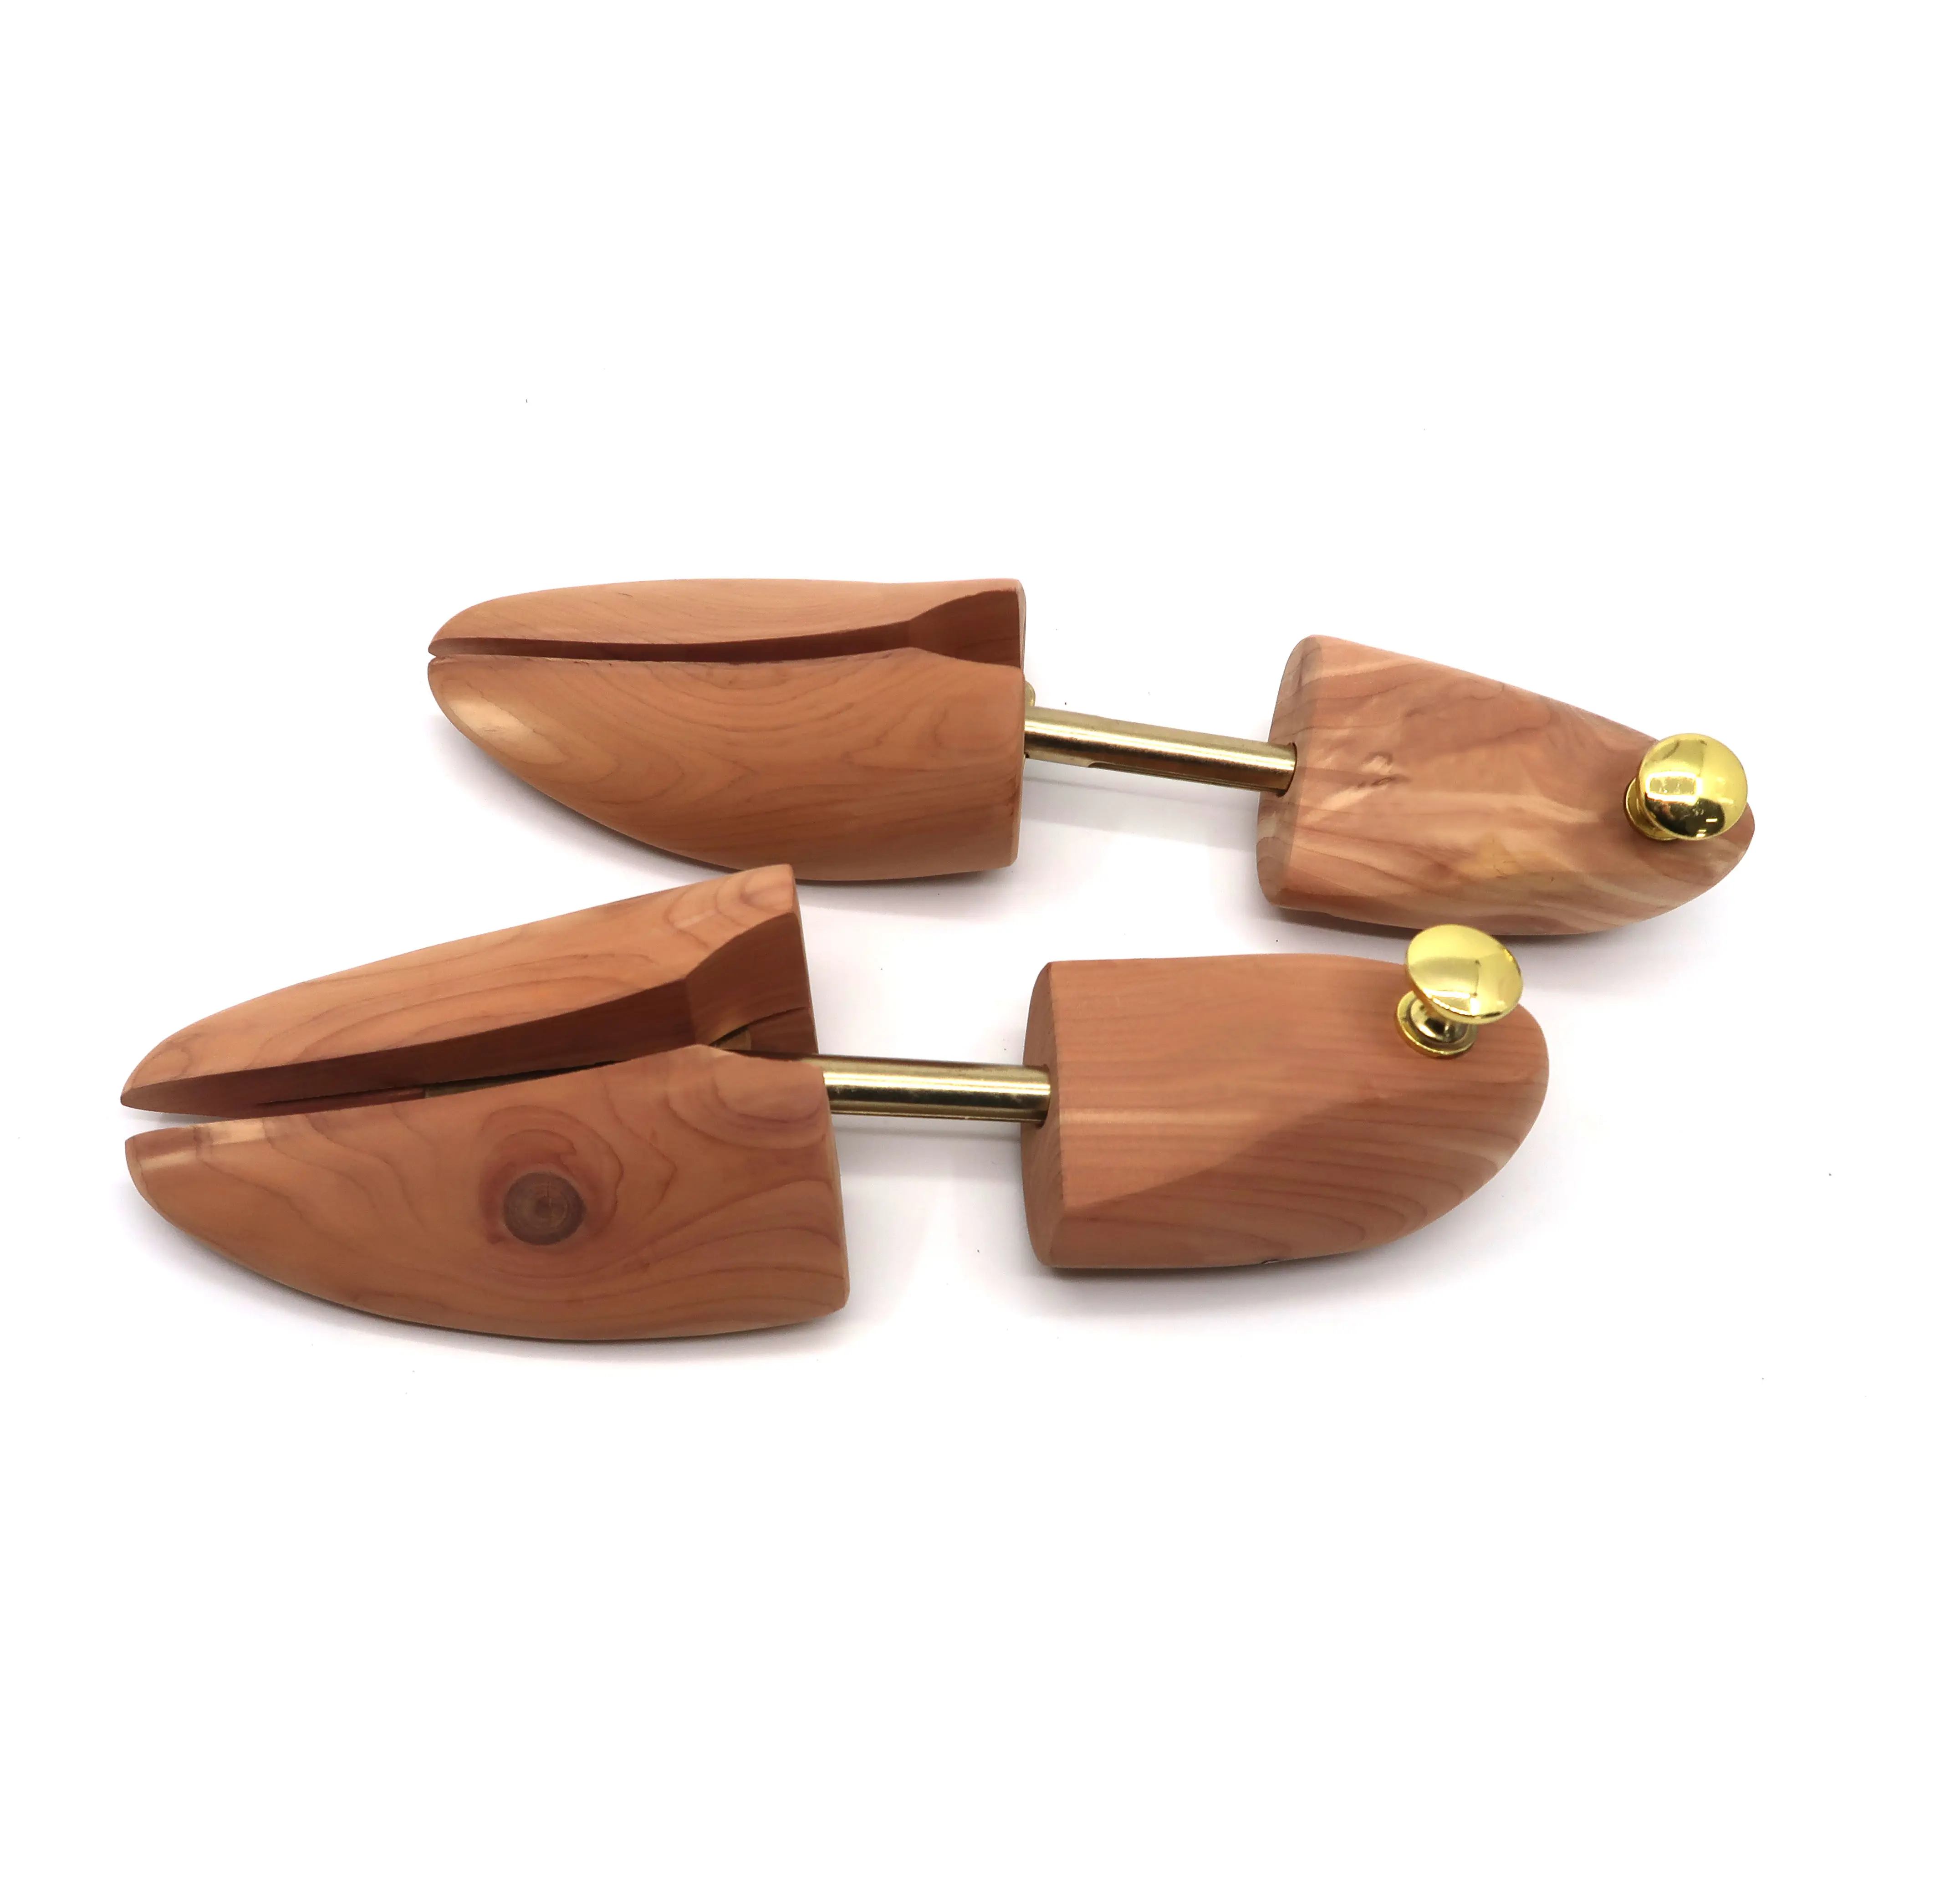 Регулируемая ароматическая древесина кедра, европейский стиль, популярная комбинированная ручка, одиночная трубка, хранитель обуви, оптовая продажа, дерево обуви ST07E